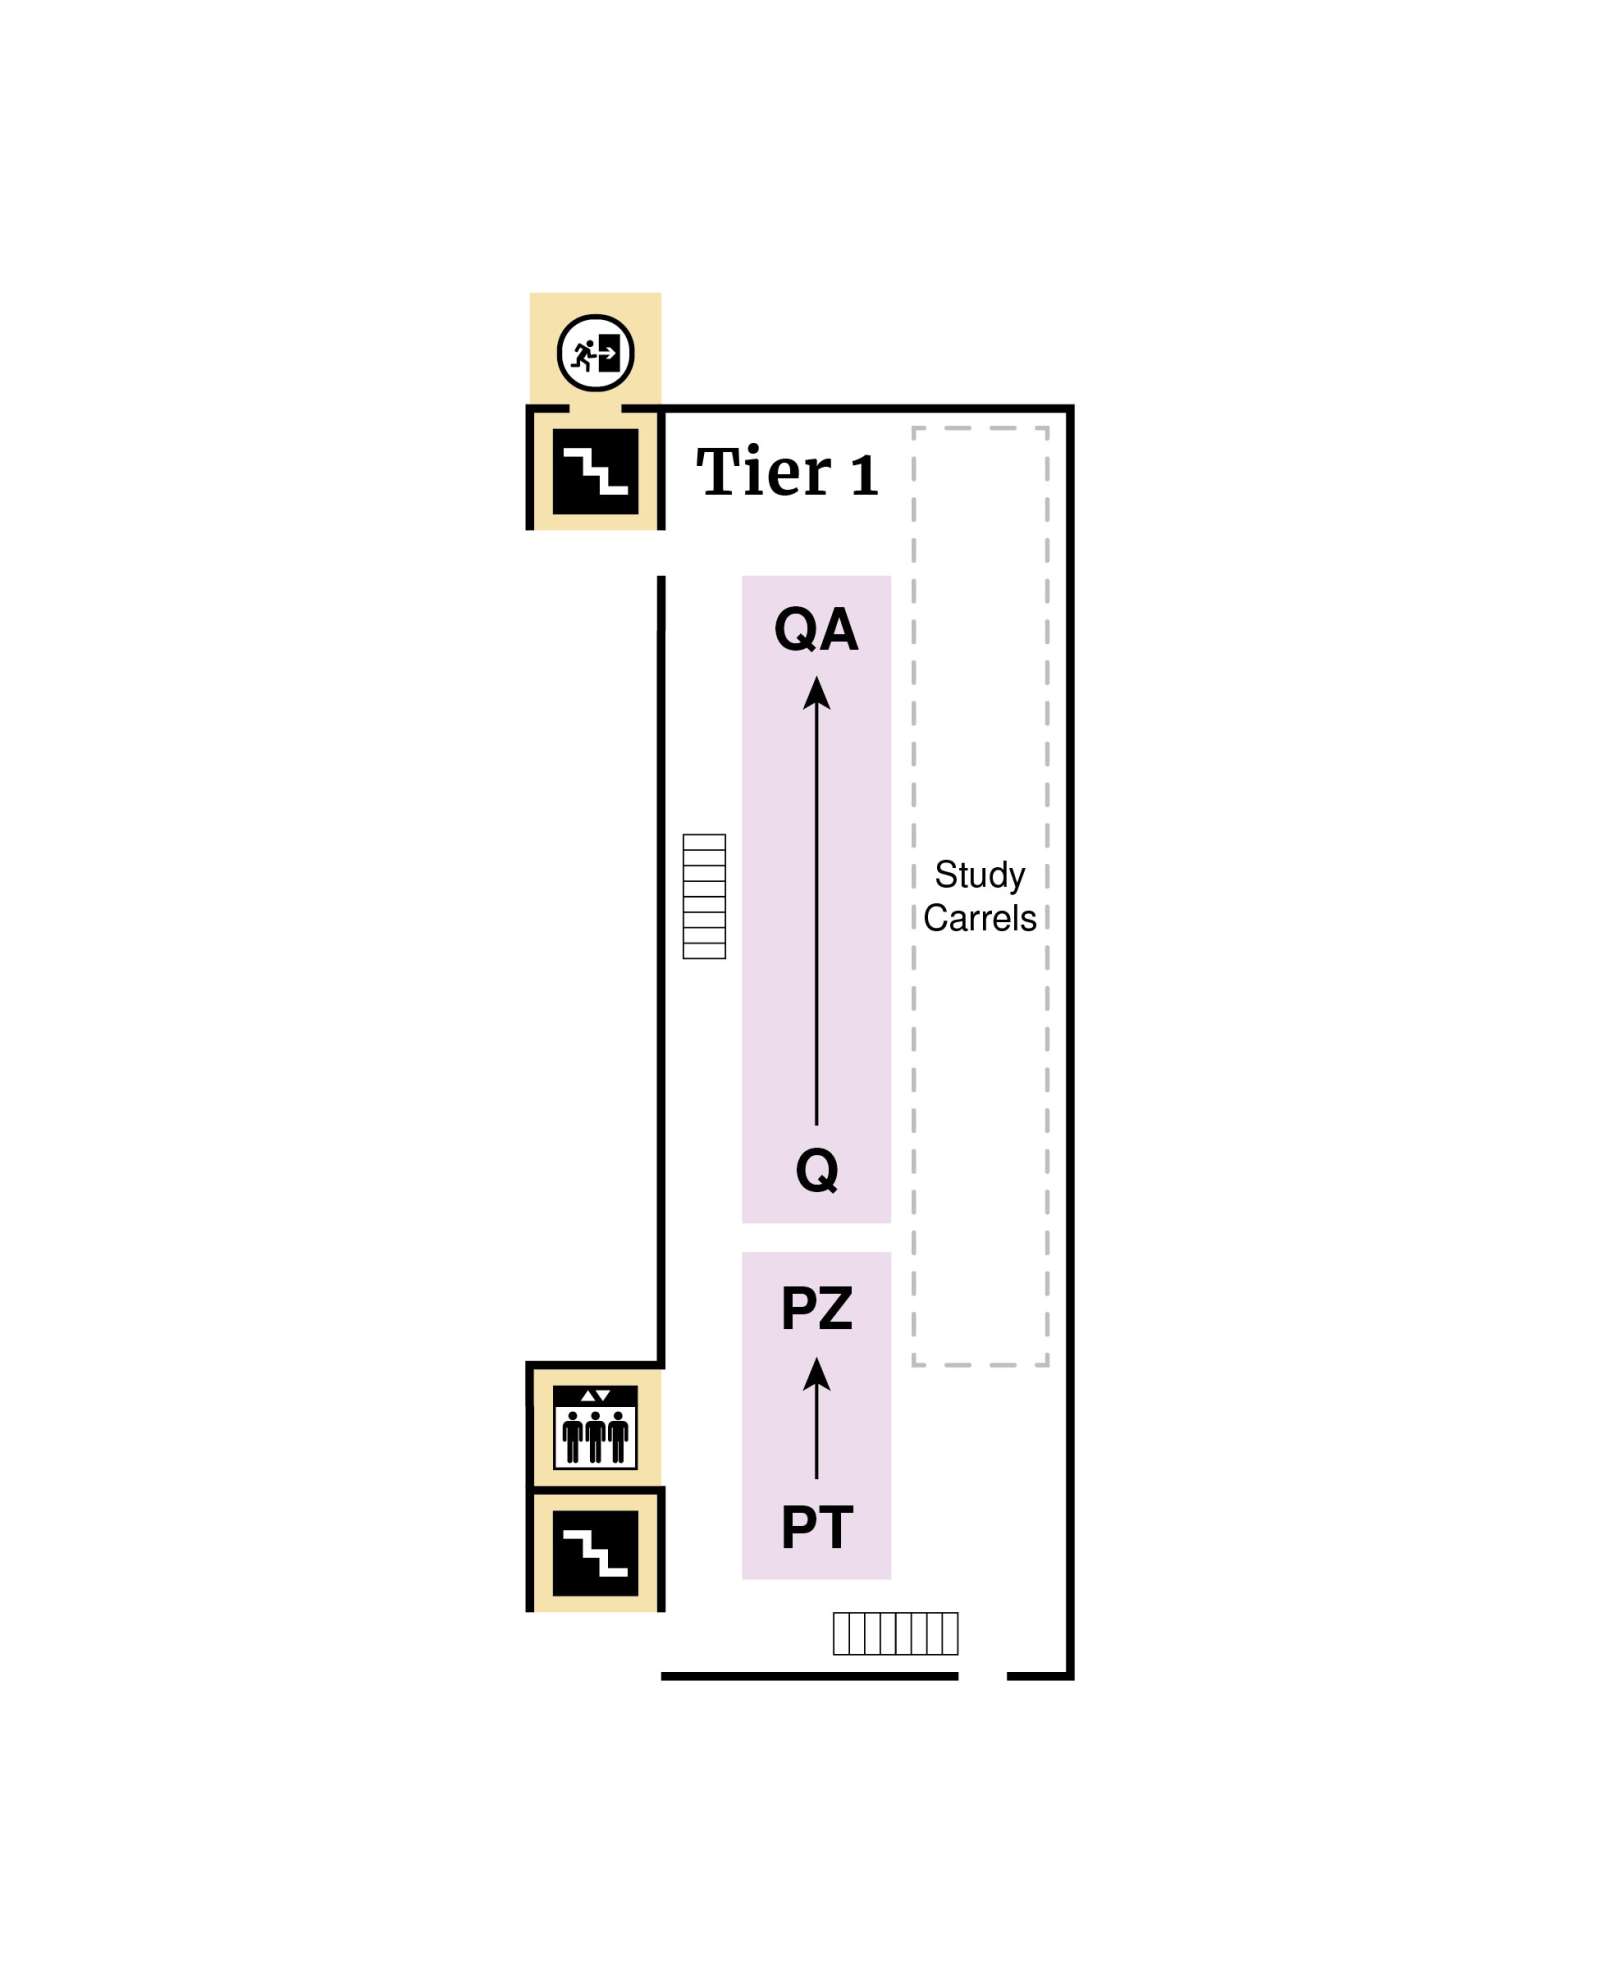 Tier 1 floor plan